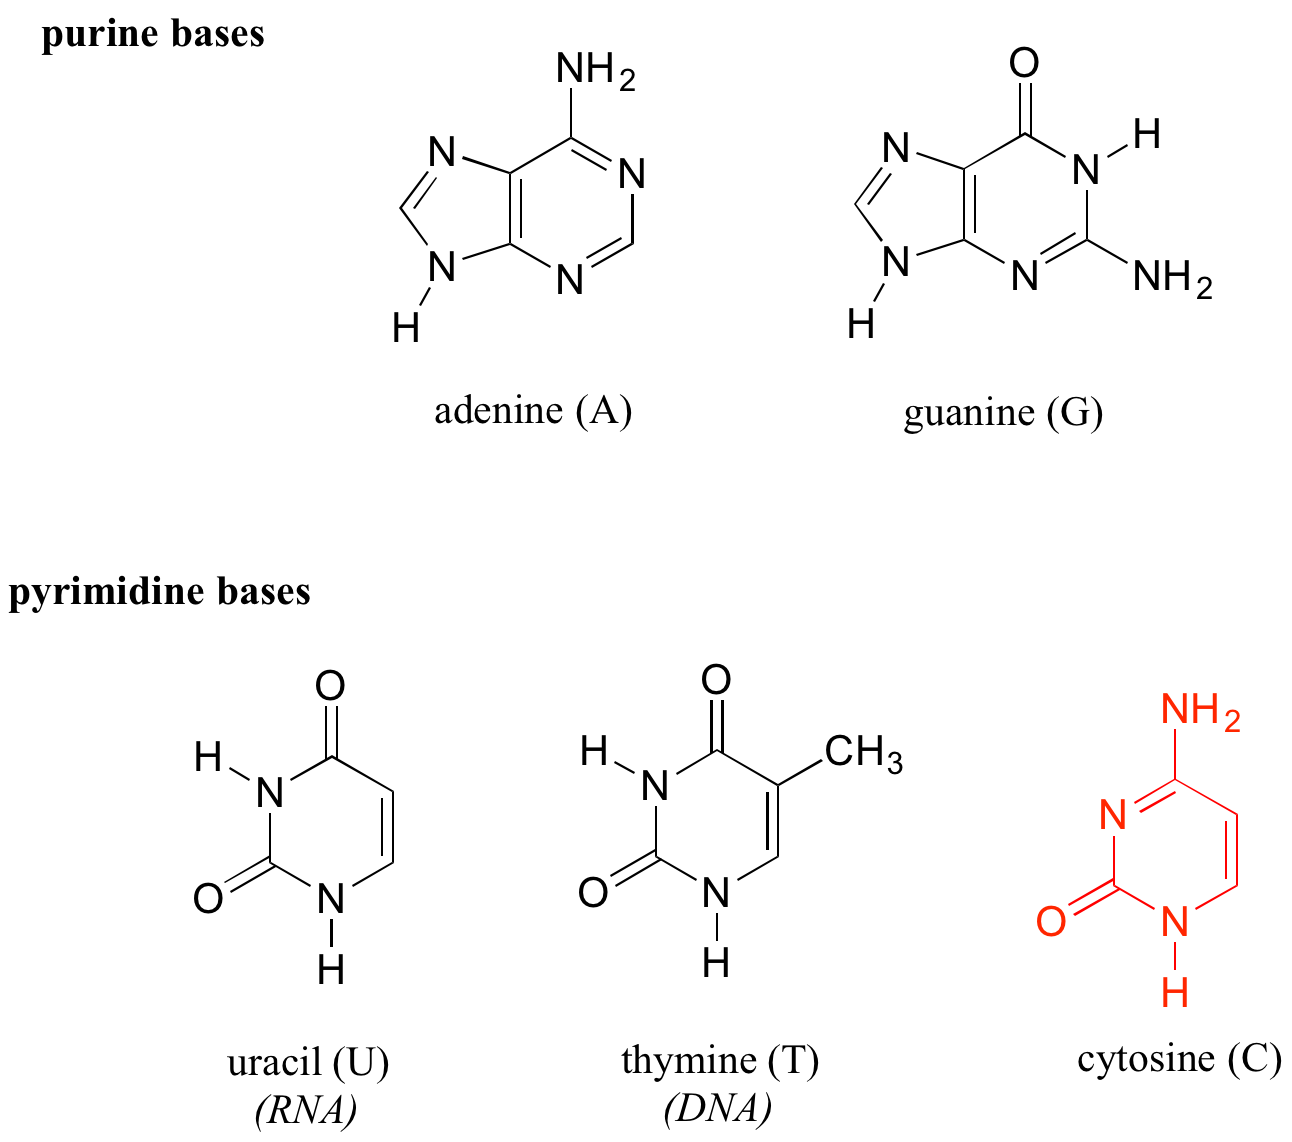 Arriba: Bases purinas; adenina (A) y guanina (G). Tener dos anillos. Abajo: Bases de pirimidina; uracilo (U) en ARN, timina (T) en ADN y citosina en ambos. Tener un anillo.